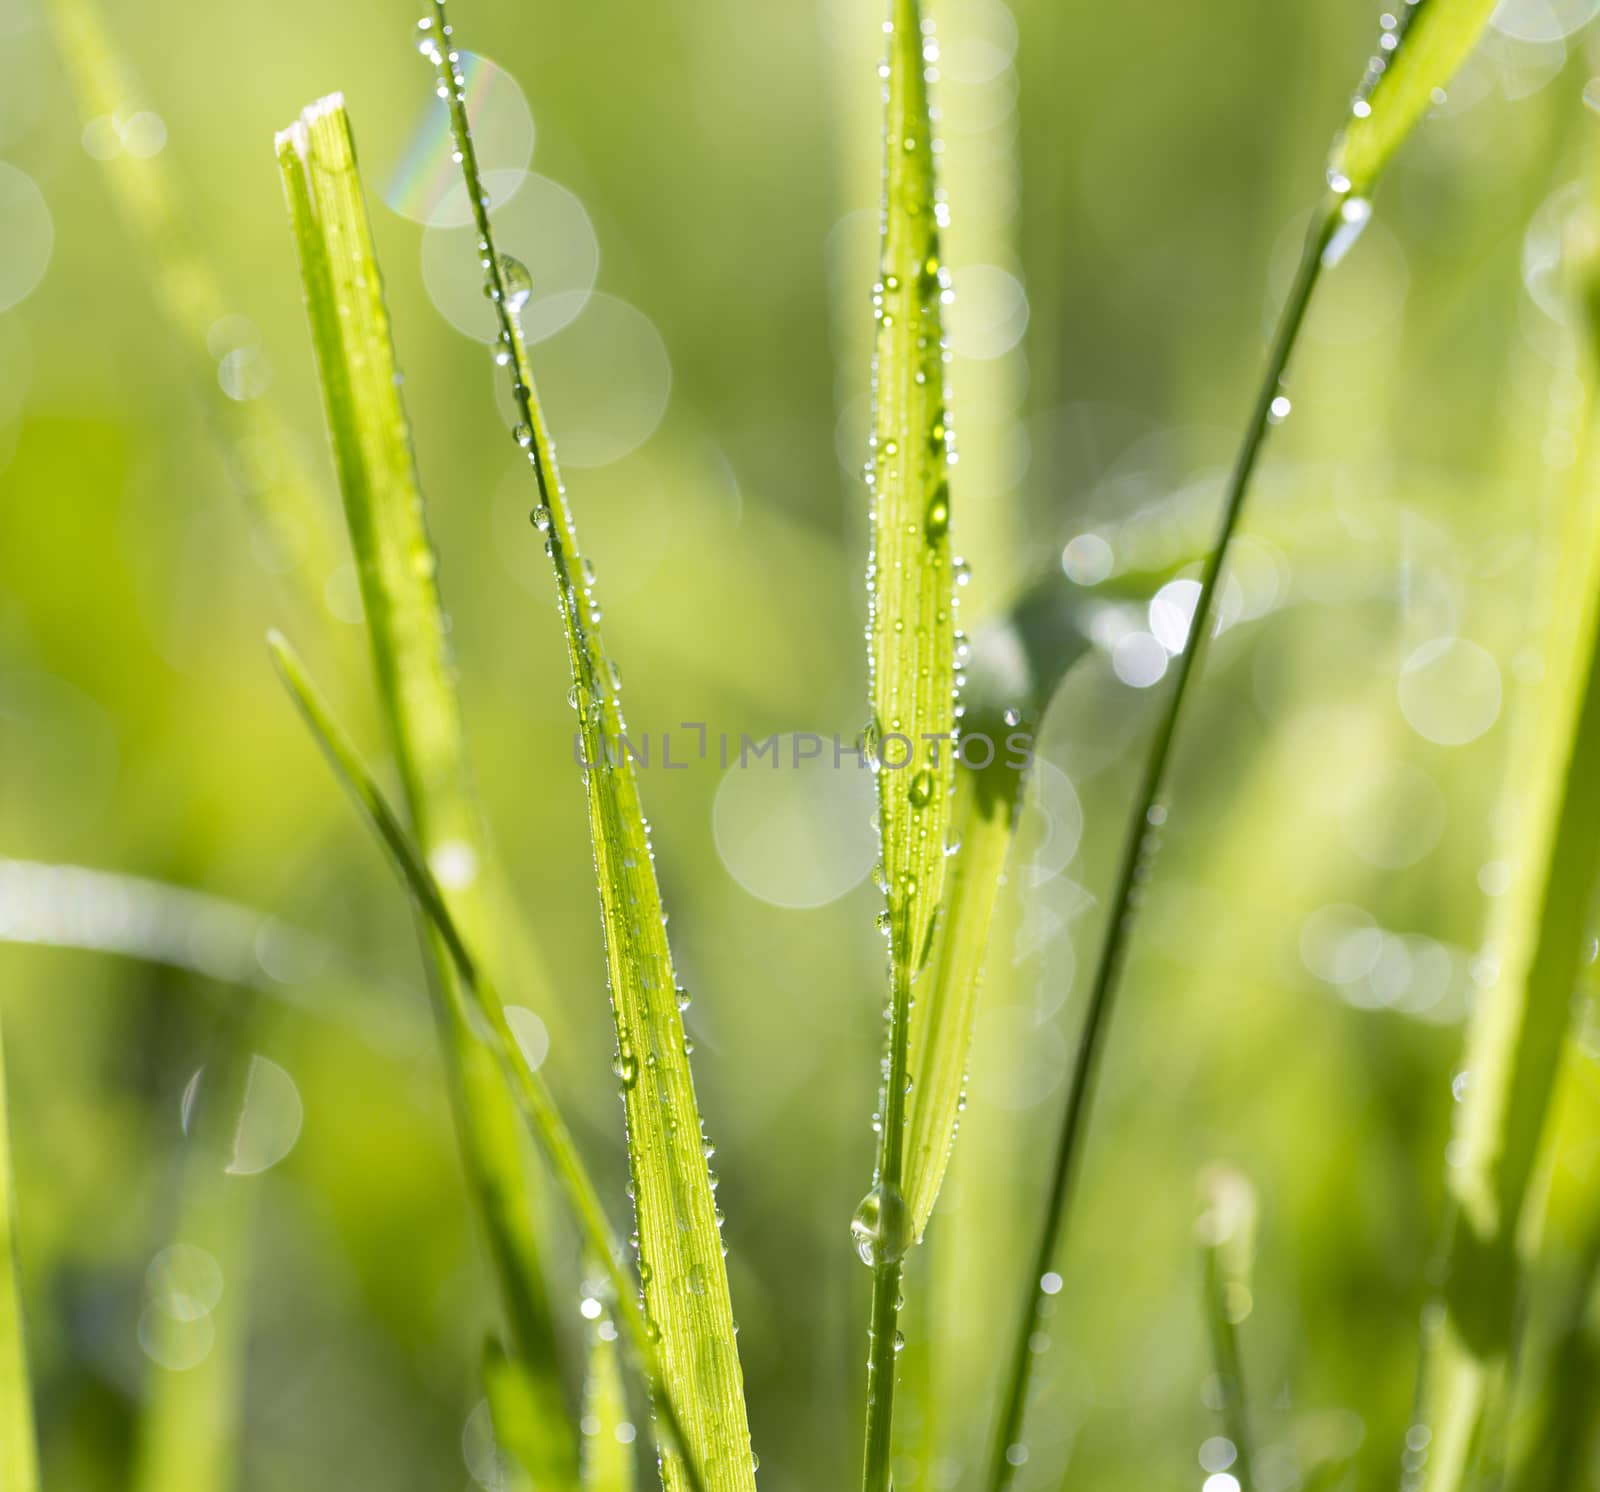 Blade of grass in morning dew by Garsya